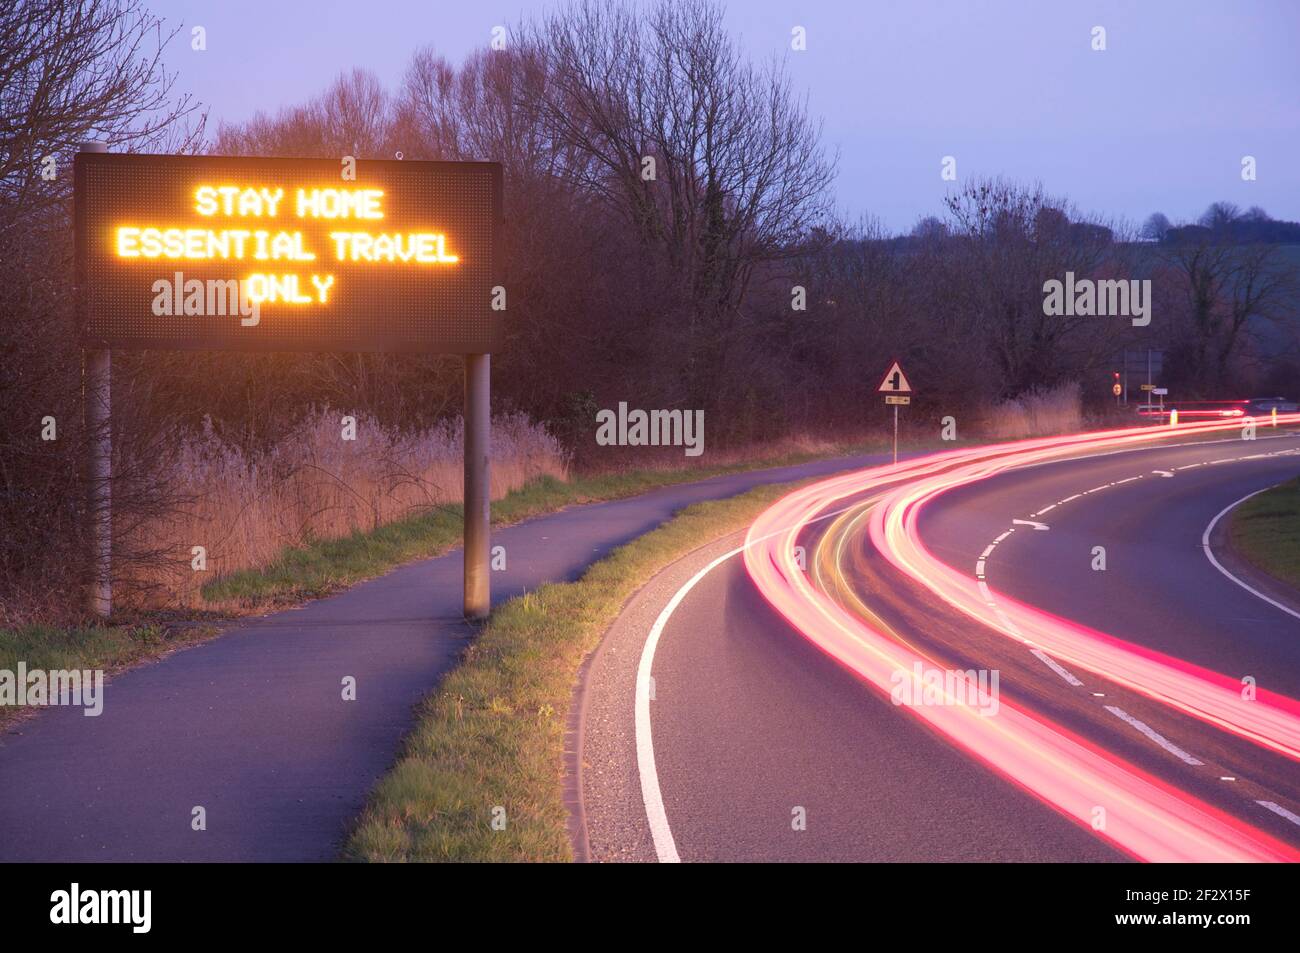 "Rimani a casa solo per i viaggi essenziali". Segnaletica stradale con display a matrice di punti elettronico che consiglia la conformità alle norme di blocco pandemiche Covid 19. Inghilterra, Regno Unito. Foto Stock